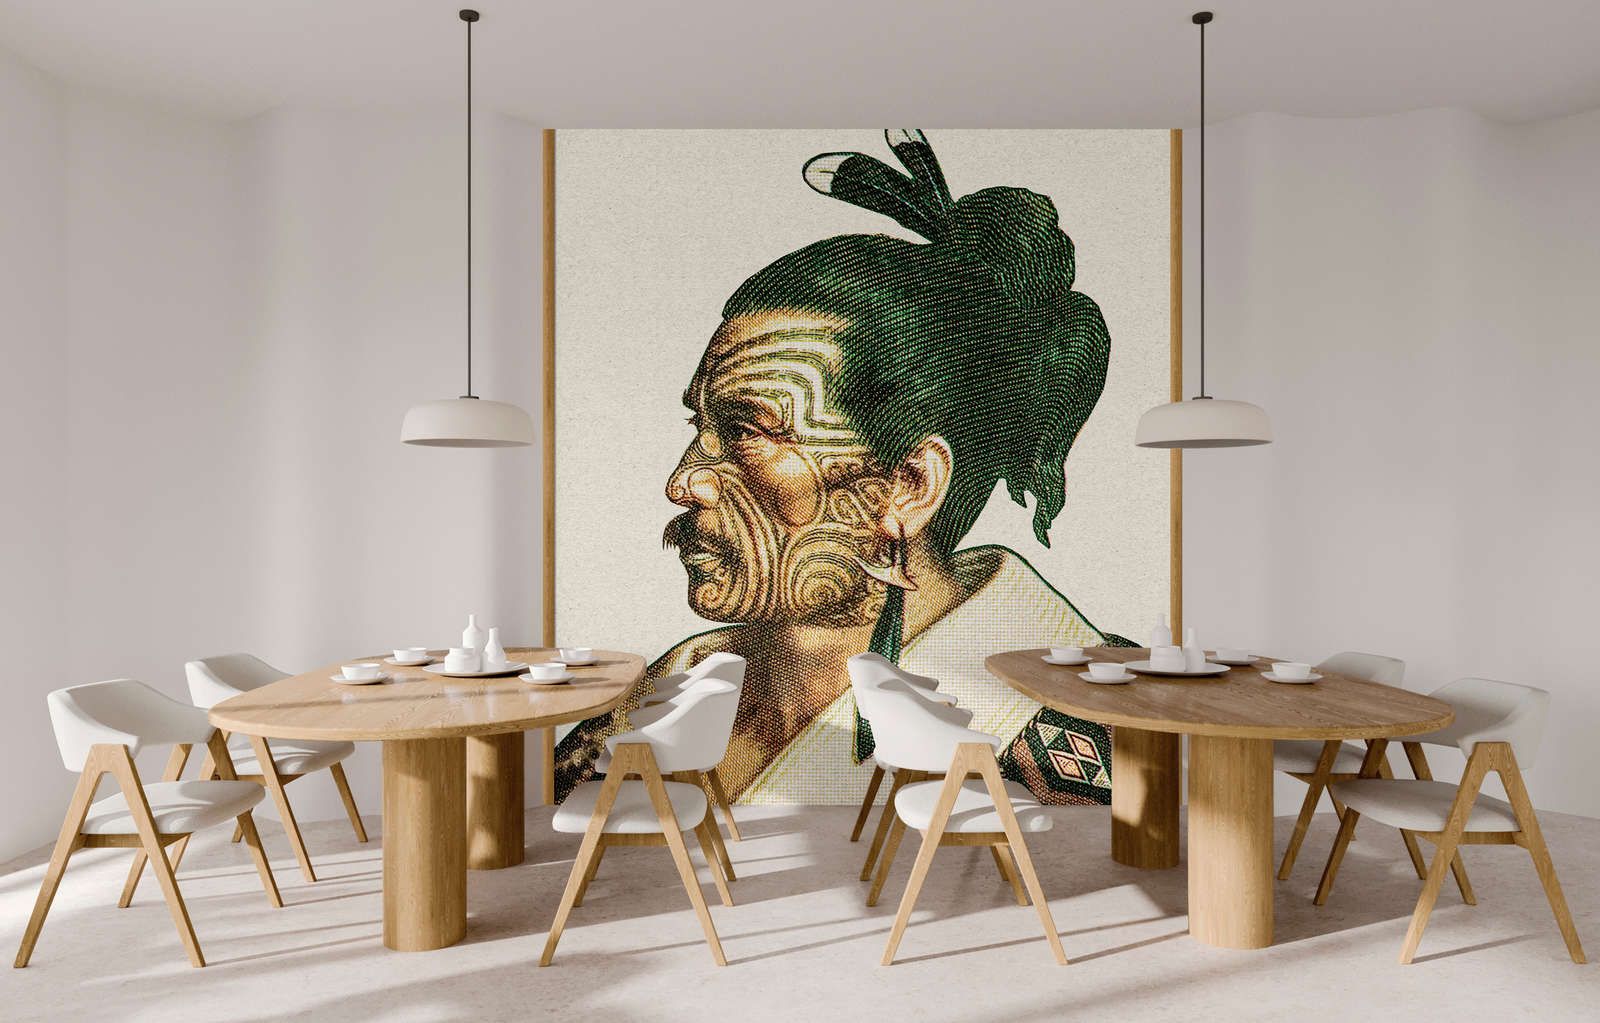             Fotobehang »horishi« - Afrikaans portret in pixelstijl met kraftpapiertextuur - mat, glad vlies
        